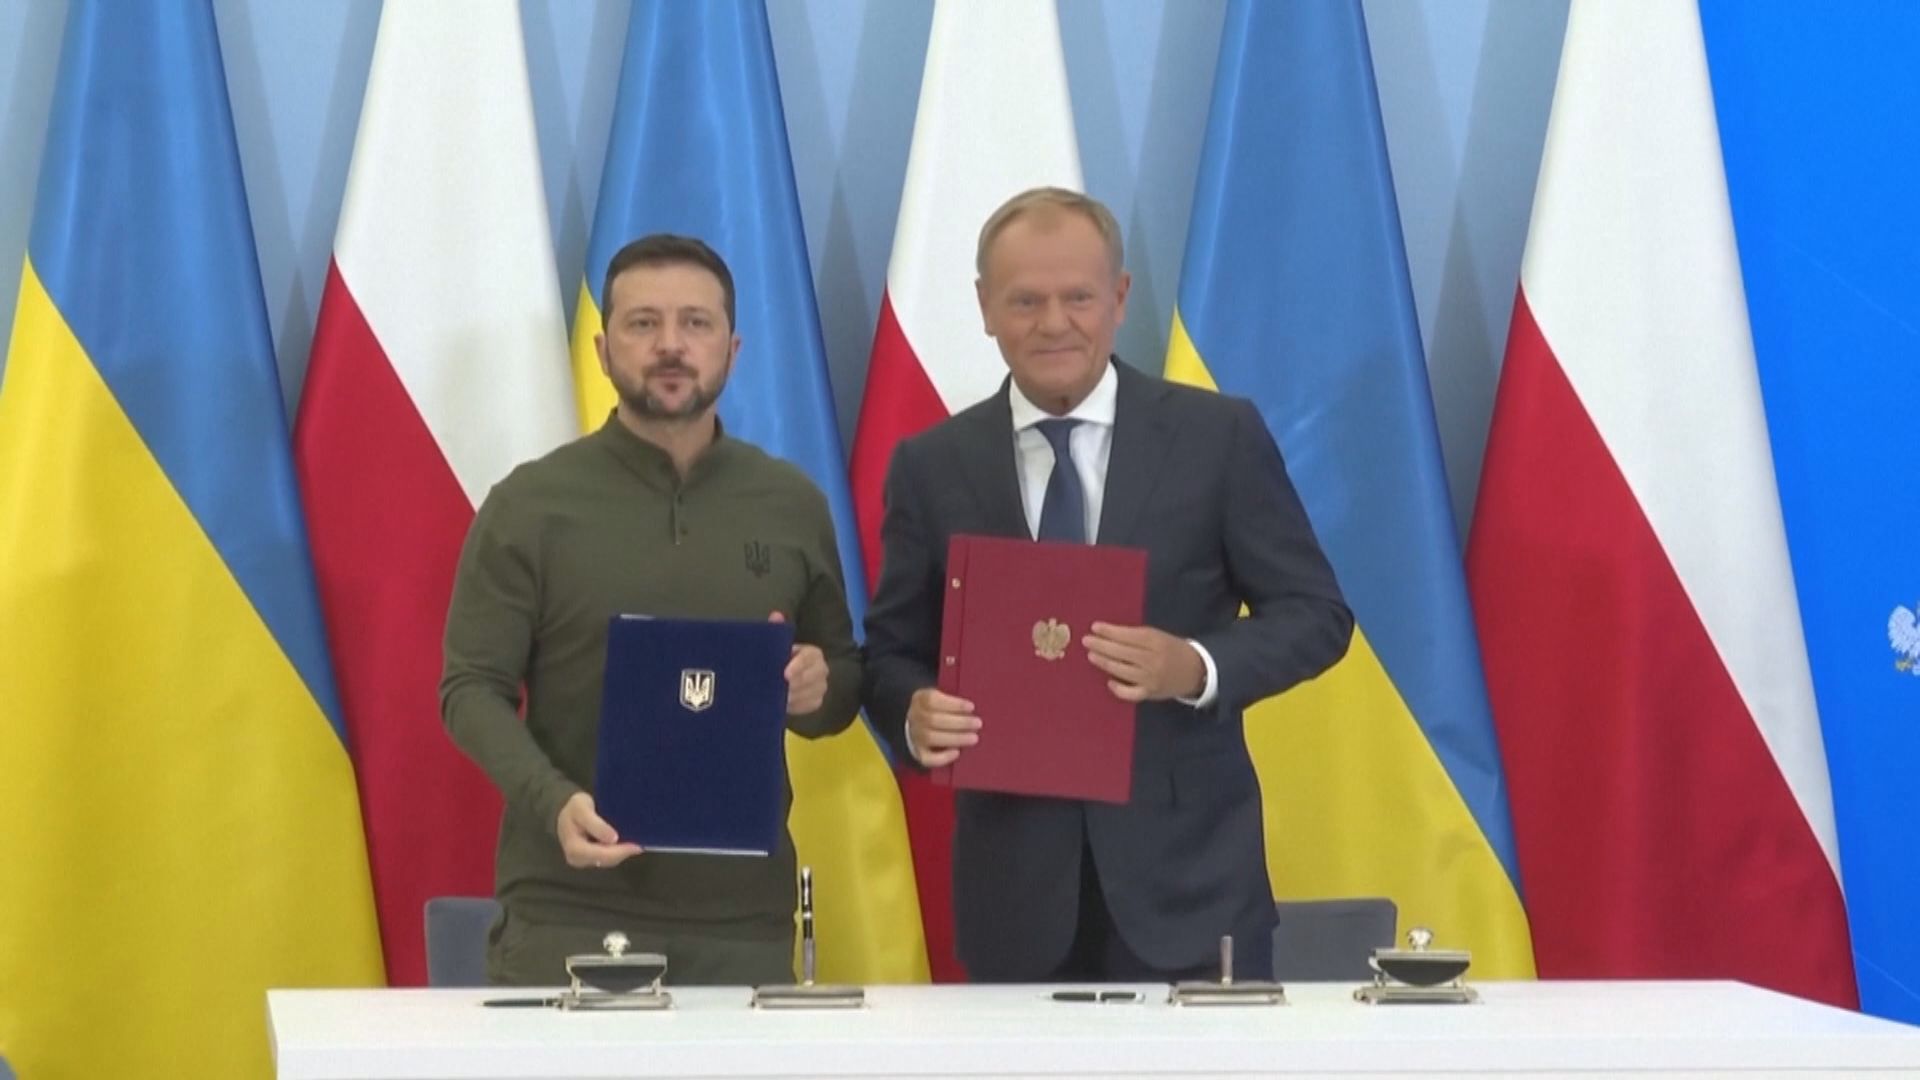 烏克蘭與波蘭簽署雙邊安全協議 波蘭將為烏方提供防禦及能源等支援